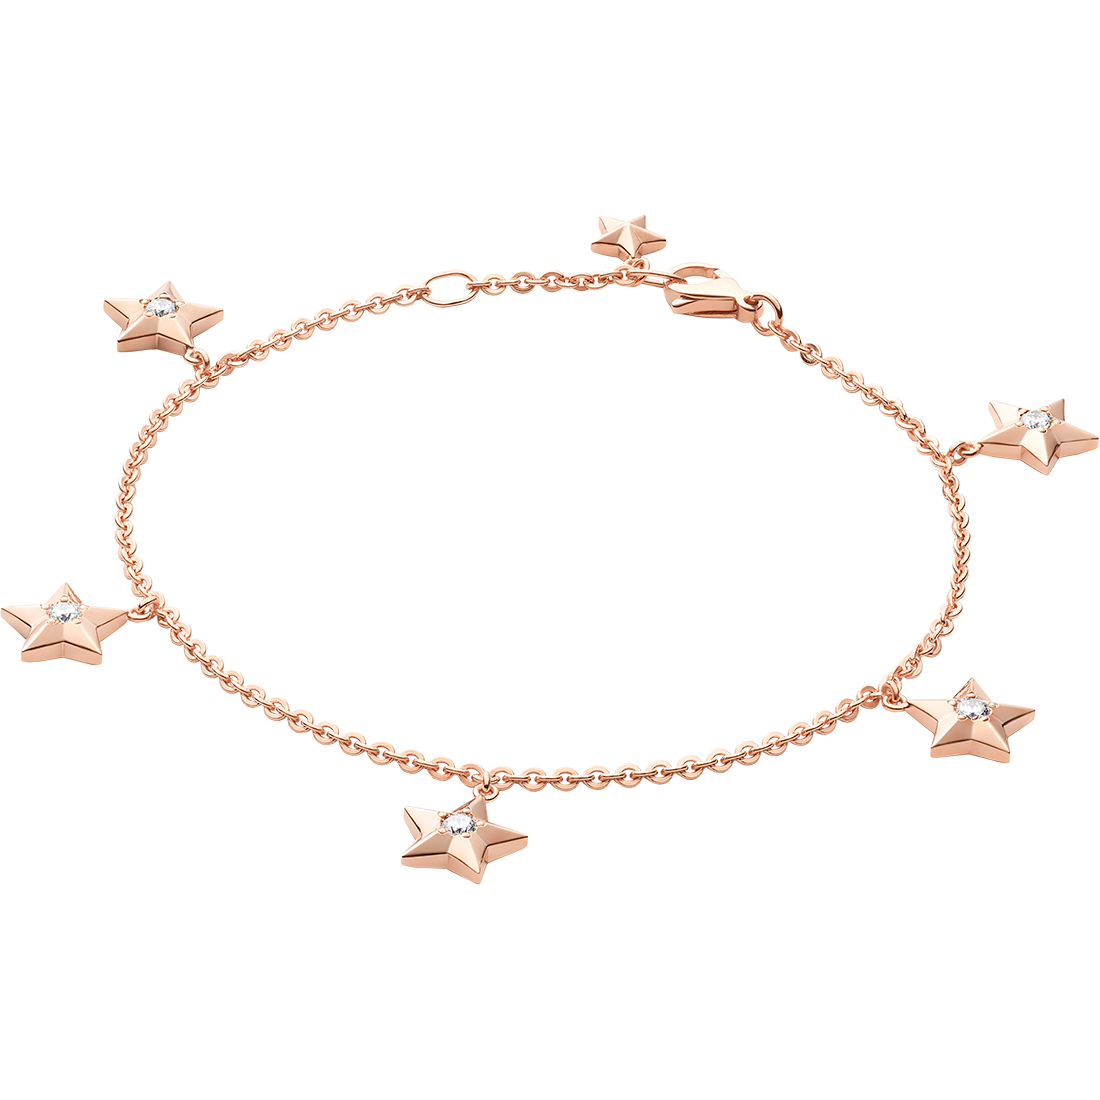 Constellation Pulseira, Ouro rosa de 18K, Diamantes - BA01BG0100305